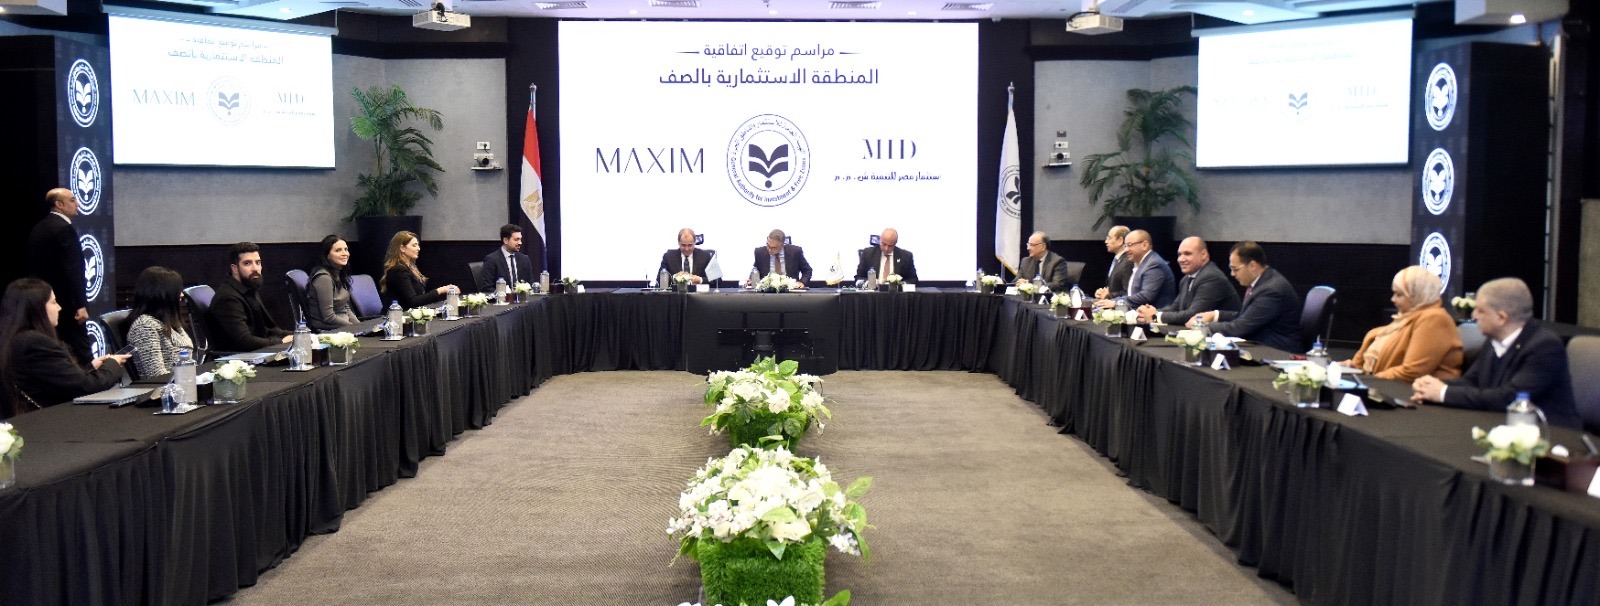 هيئة الاستثمار ومجموعة مكسيم توقعان عقد إطلاق أول منتجع للسياحة العلاجية في مصر